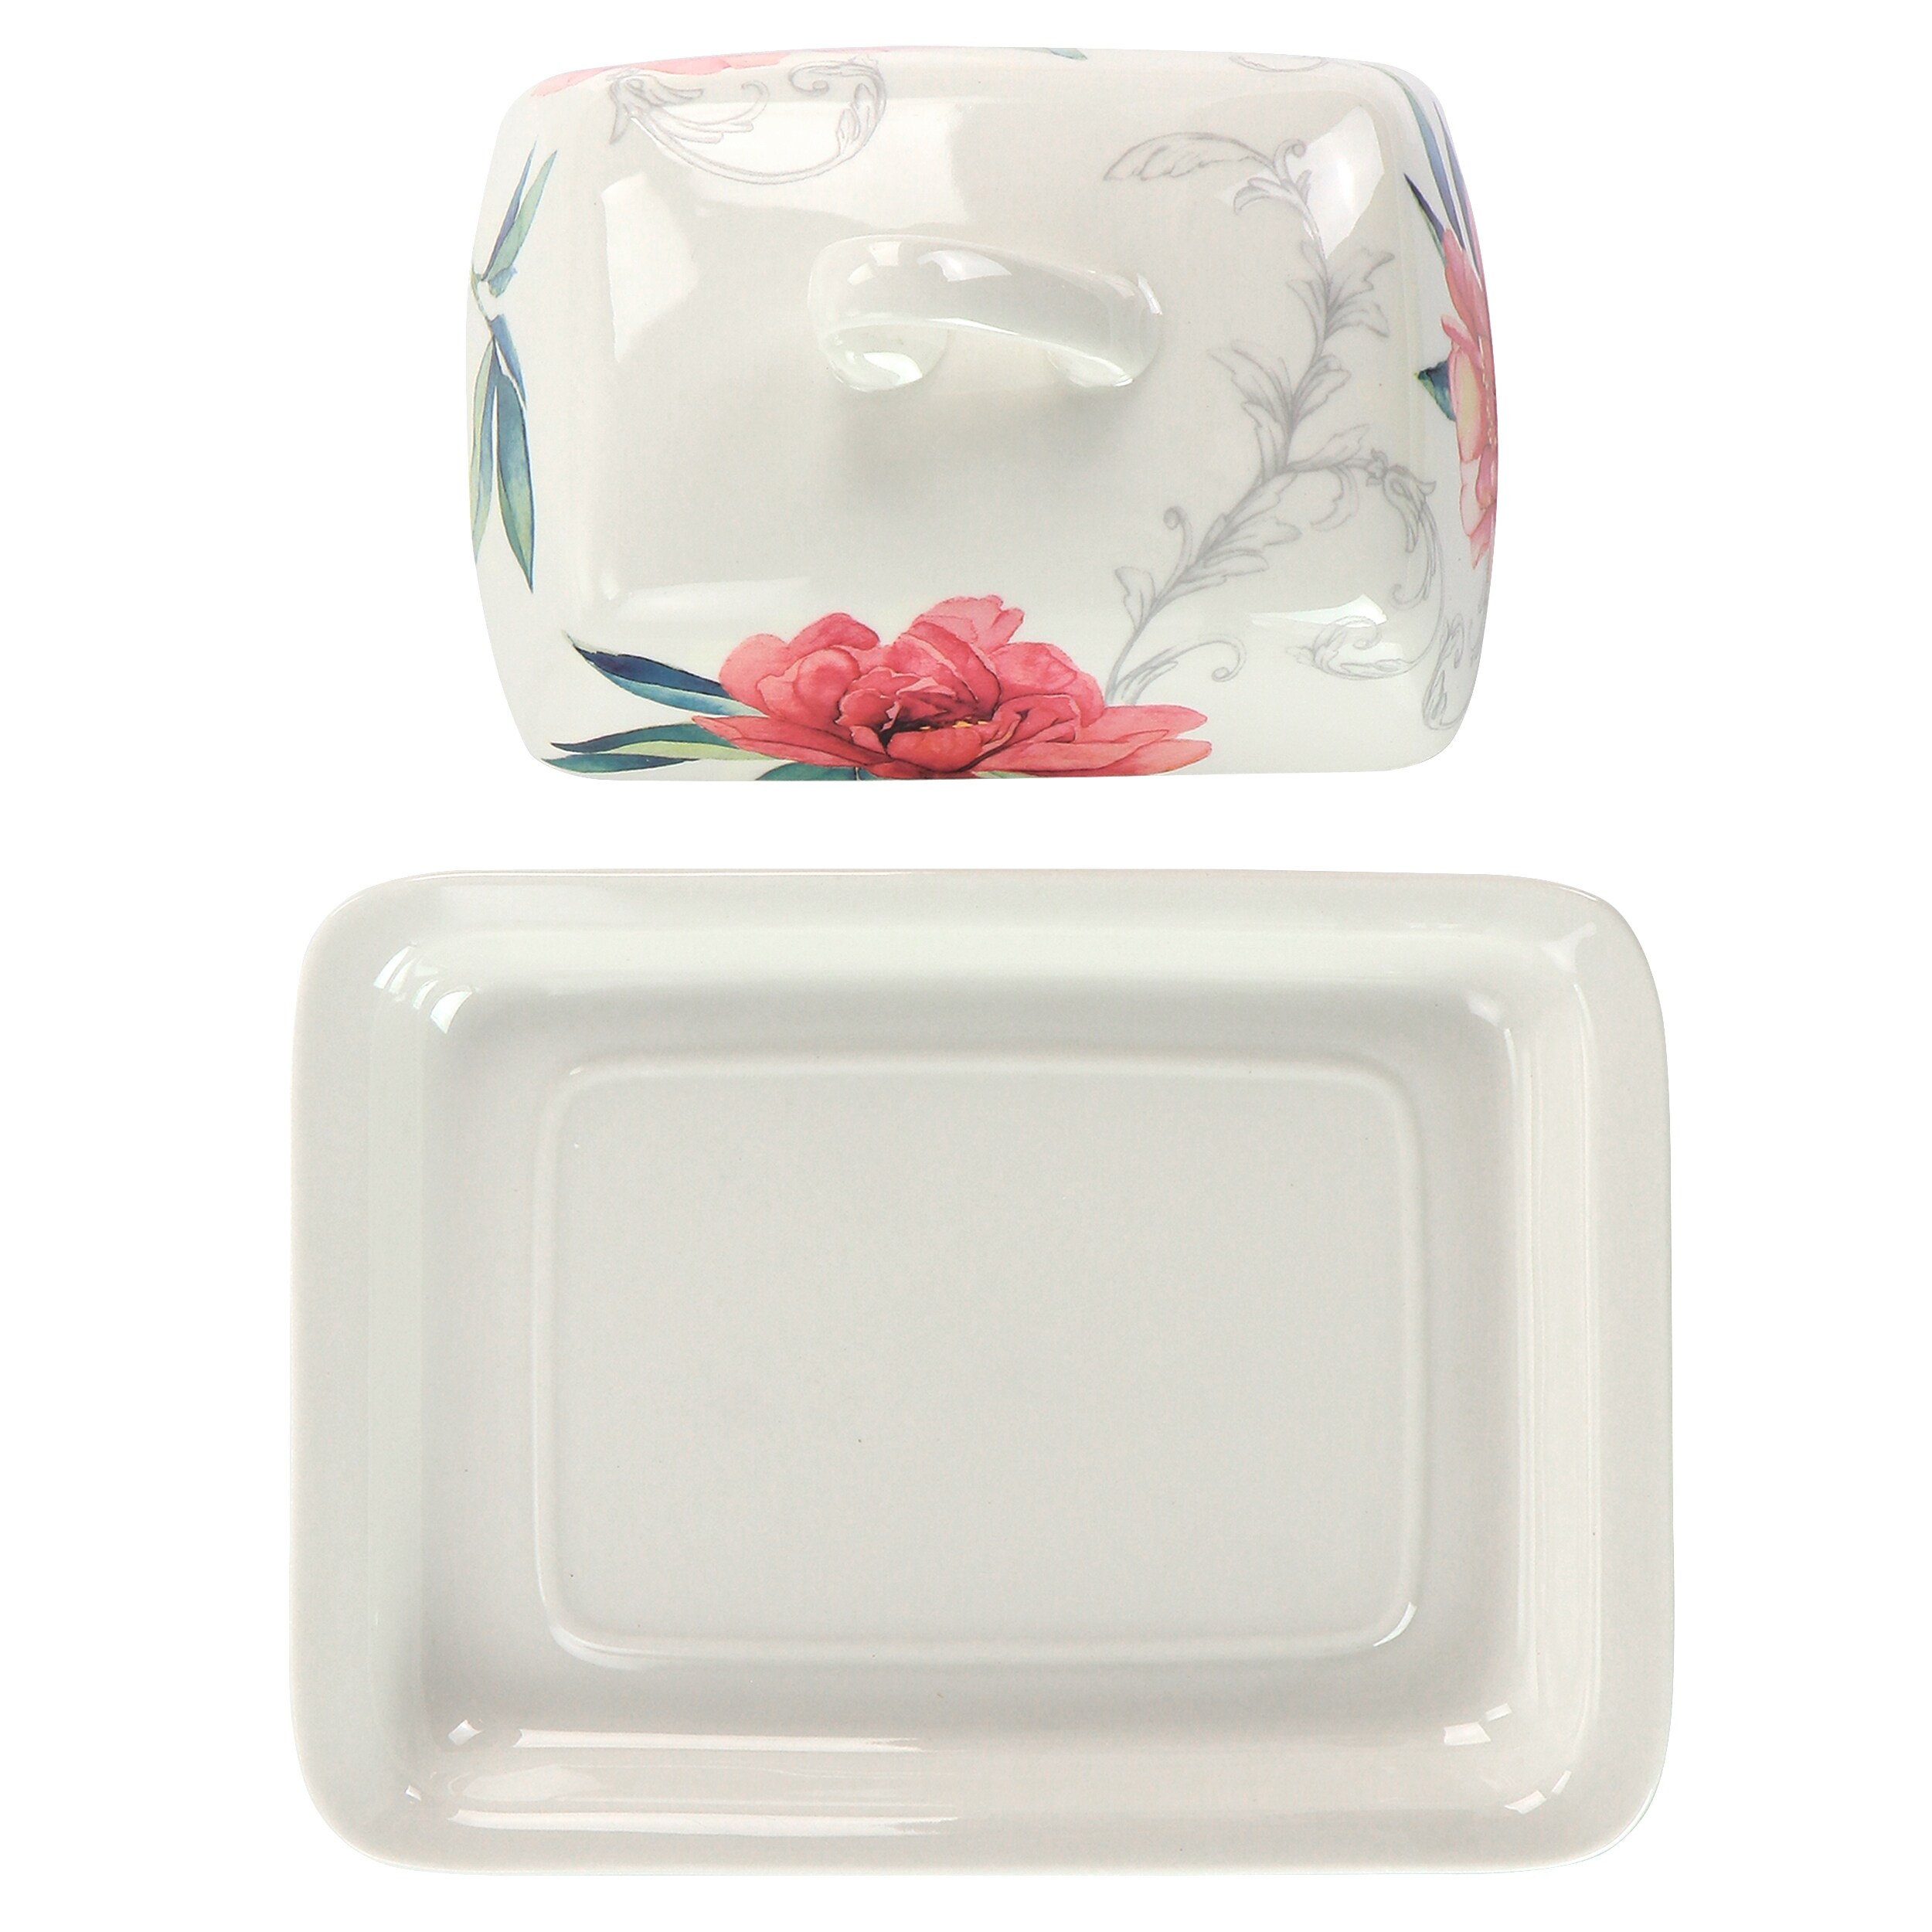 Martha Stewart Fine Ceramic 7.5 Inch Butter Dish in Floral Designs